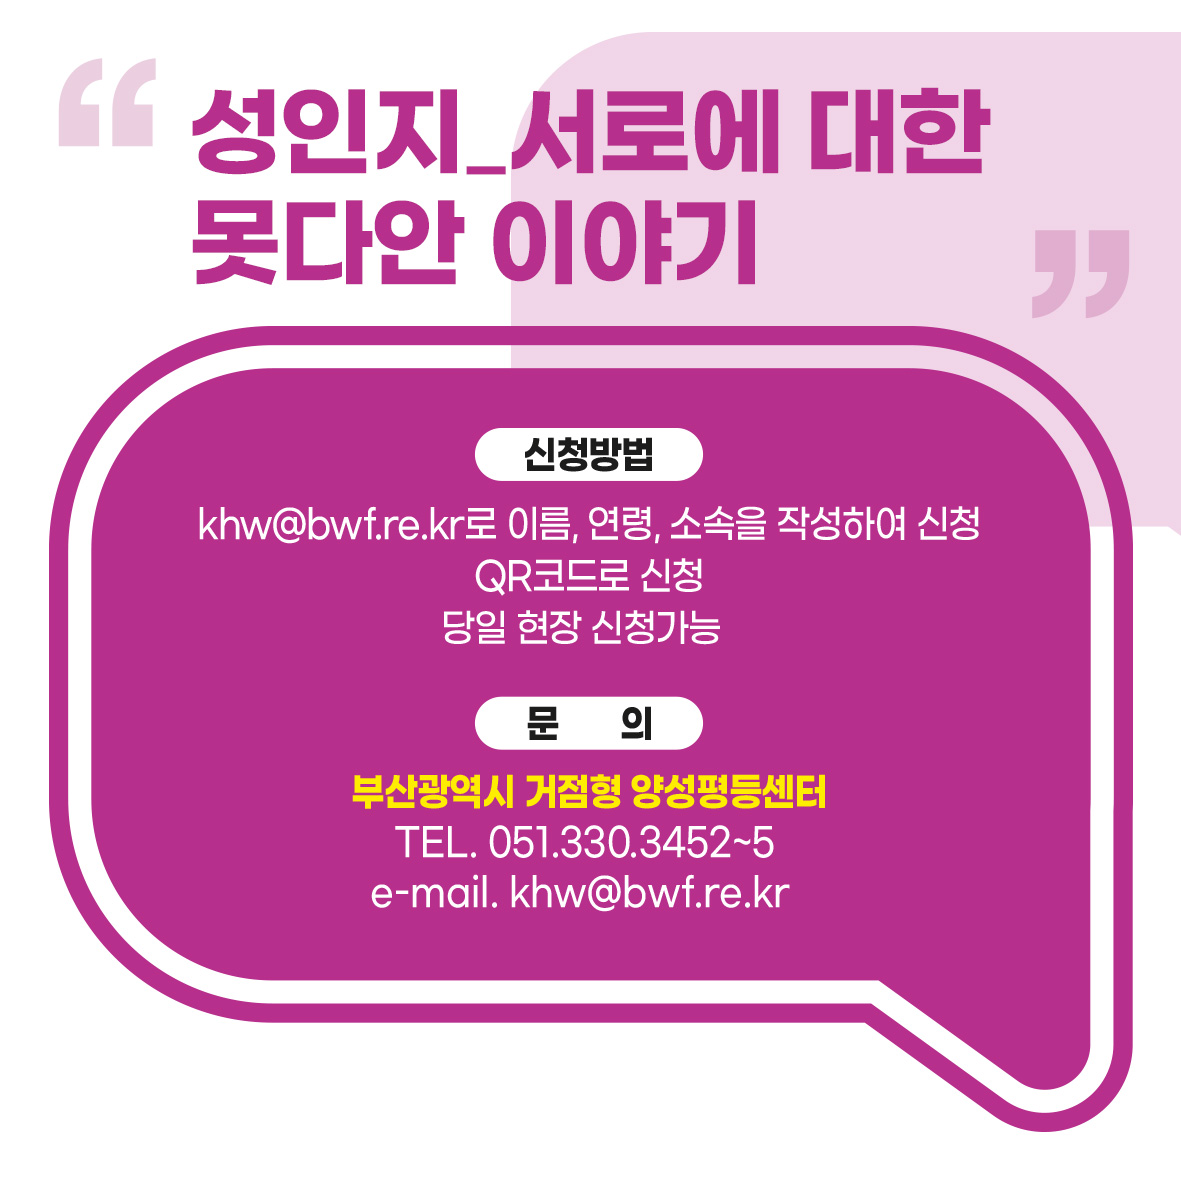 부산가톨릭대성인지교육카드뉴스3